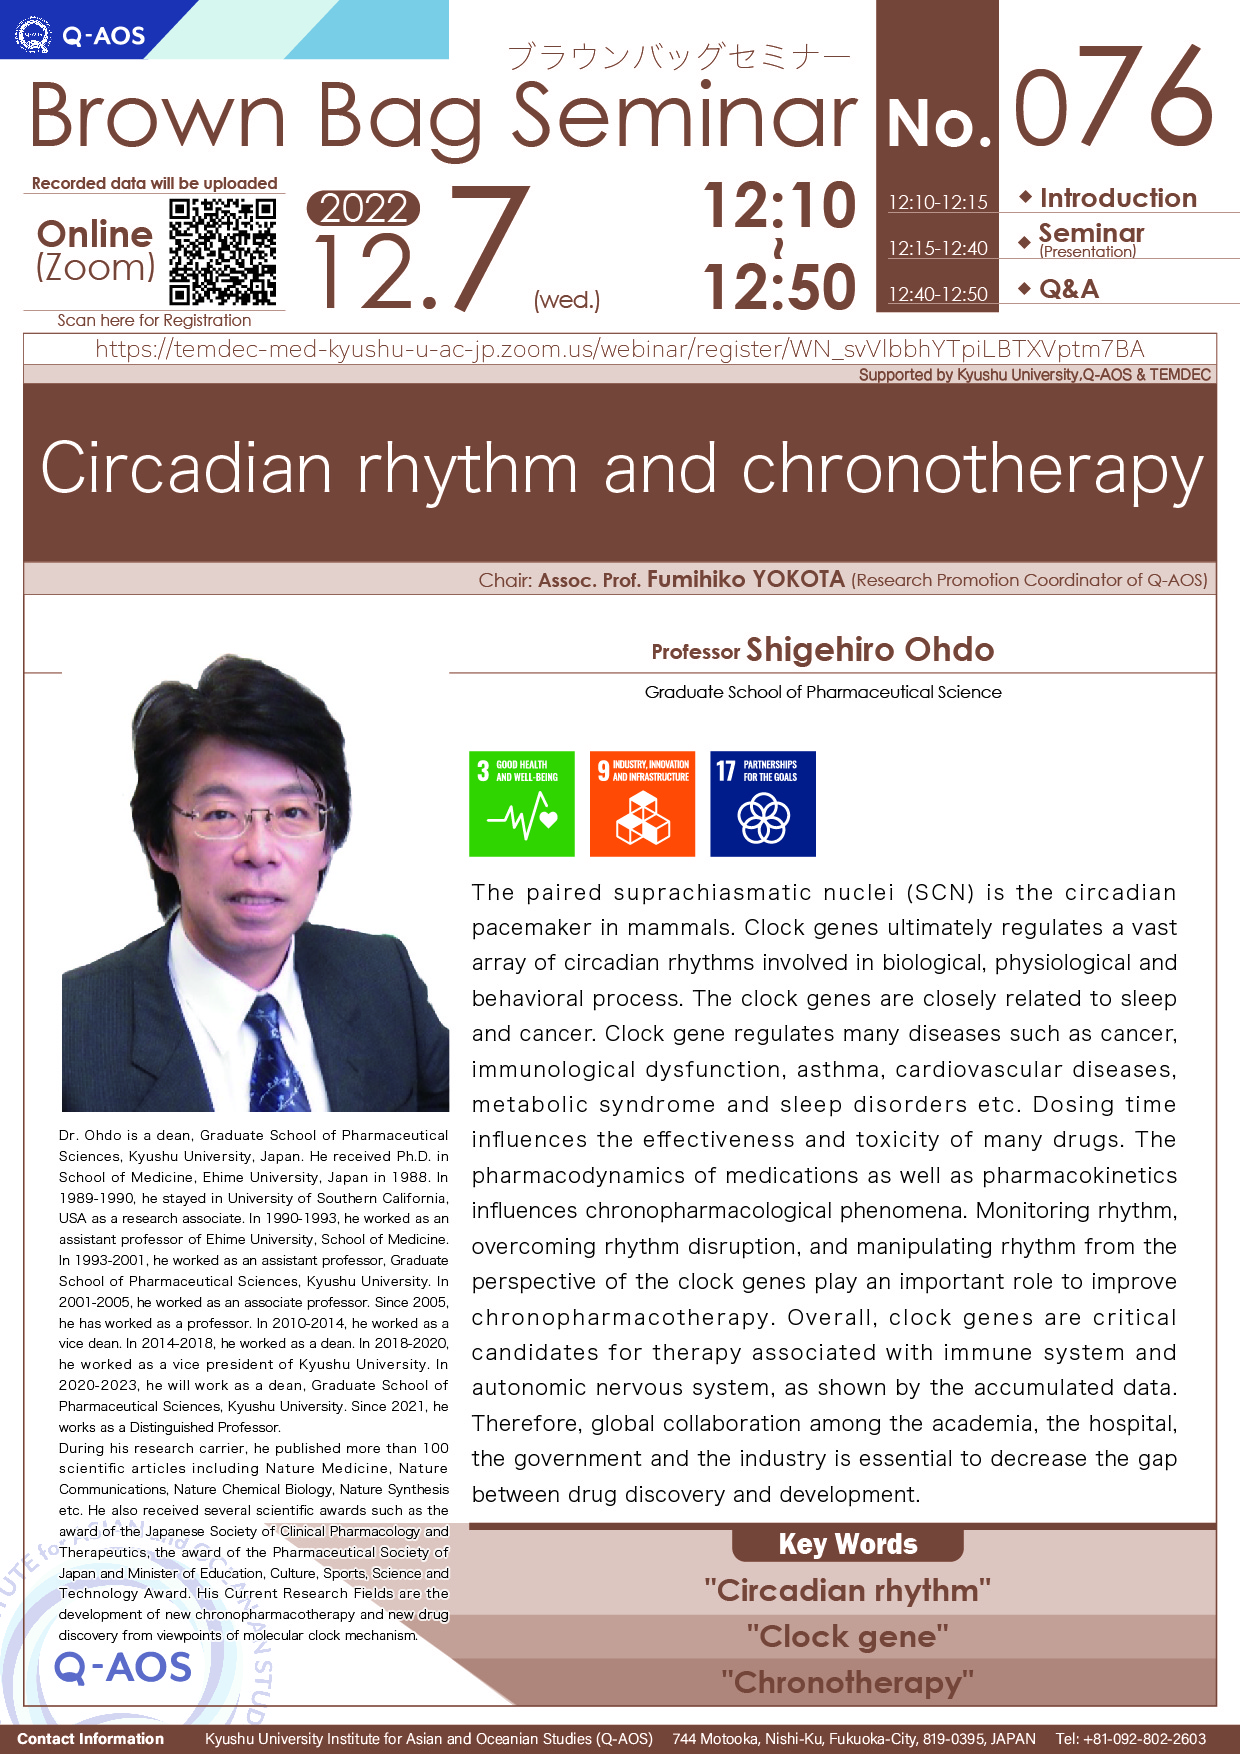 アイキャッチ画像：Q-AOS Brown Bag Seminar Series The 76th Seminar “Circadian rhythm and chronotherapy”